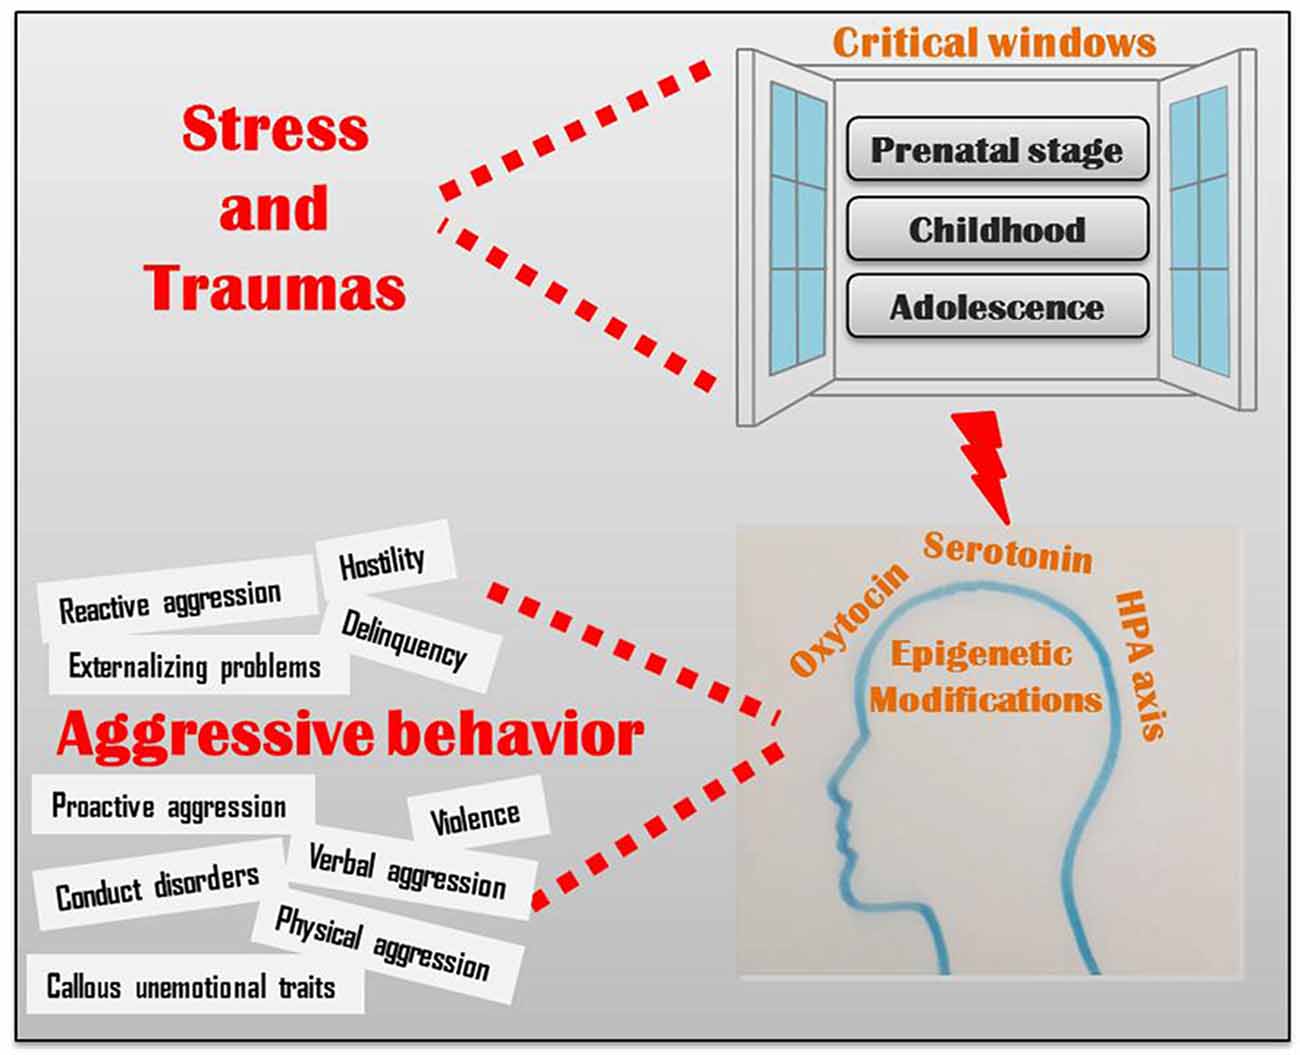 estrés y traumas pueden afectar varias ventanas críticas de desarrollo a través del eje HPA, oxitocina y serotonina de múltiples maneras